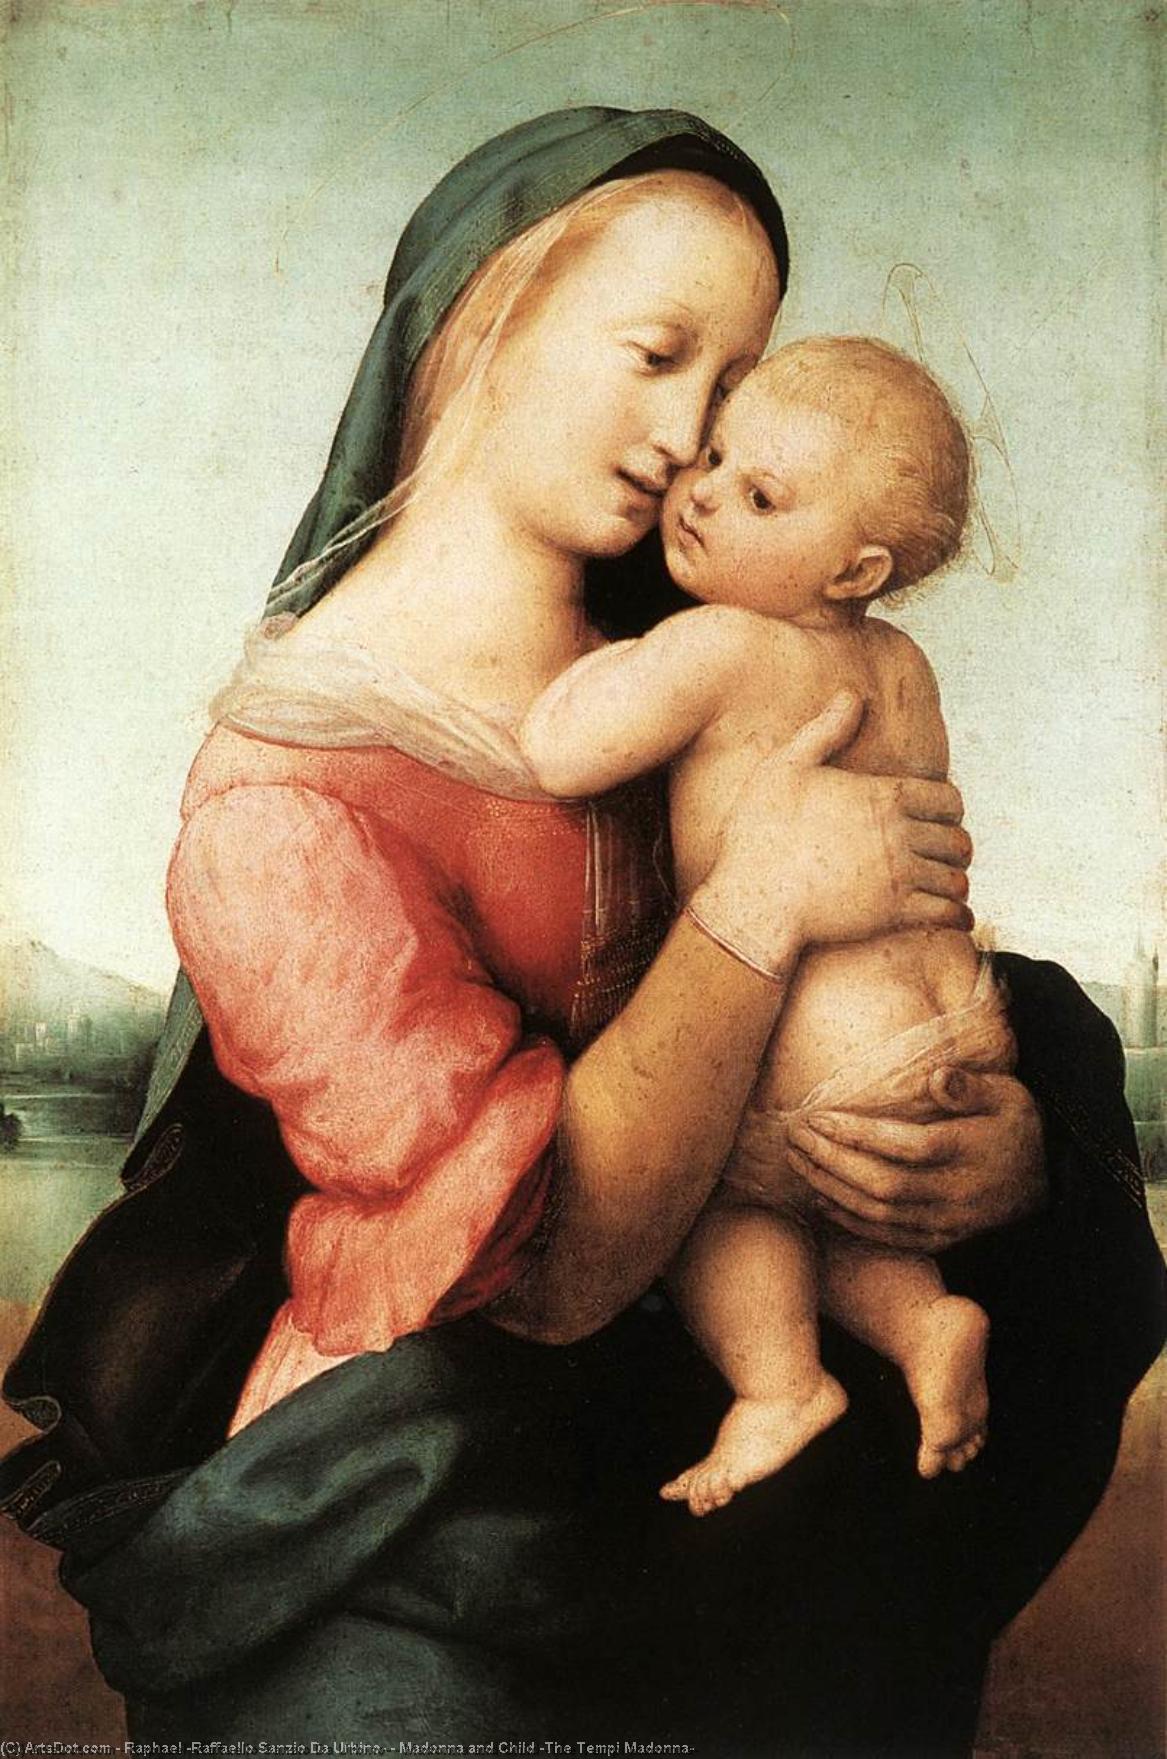 Compre Museu De Reproduções De Arte madonna e criança (The Tempi Madonna), 1508 por Raphael (Raffaello Sanzio Da Urbino) (1483-1520, Italy) | ArtsDot.com